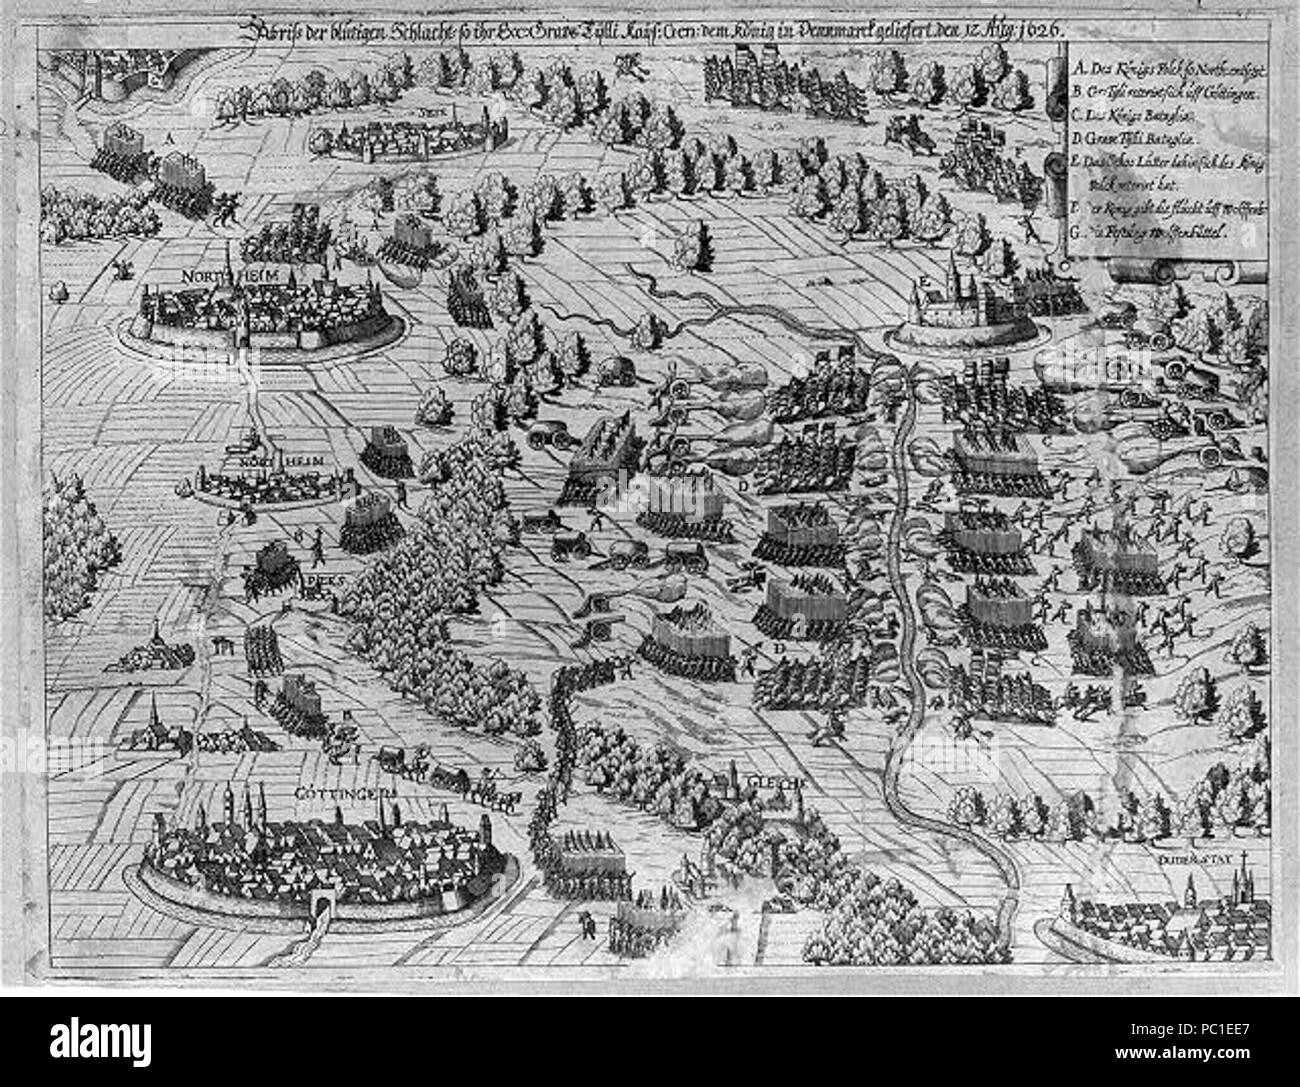 Abriss der blutigen Schlacht so ihr Exc. Grave Tÿlli. Kaÿs. Gen. dem König in Dennmarck geliefert den 12. Aug. 1626. Stock Photo